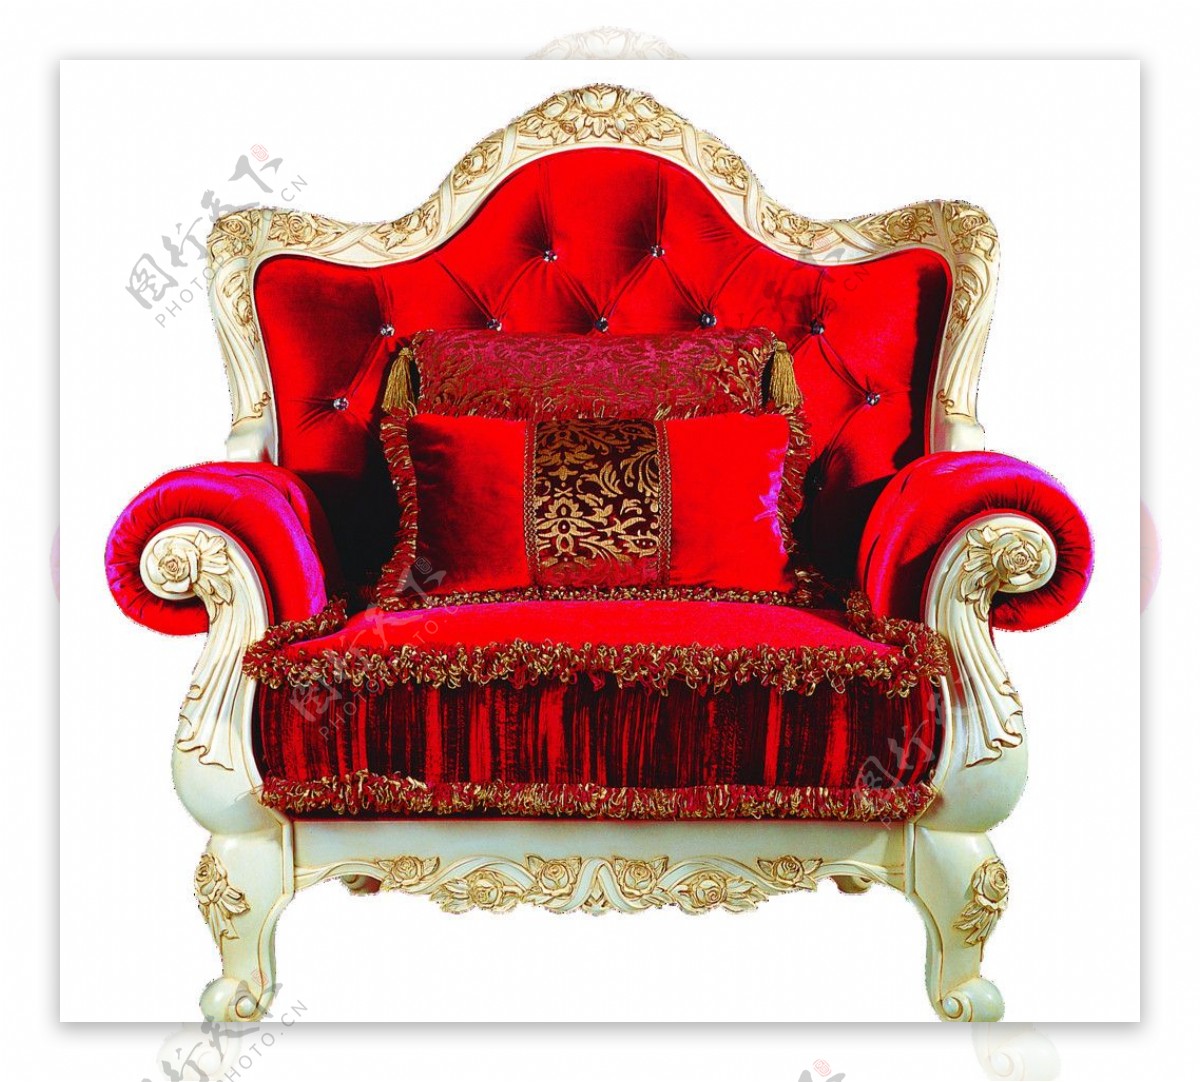 欧式新古典真皮组合低调奢华实木双人沙发|国产高端品牌家具|咨询热线:4009-676-188